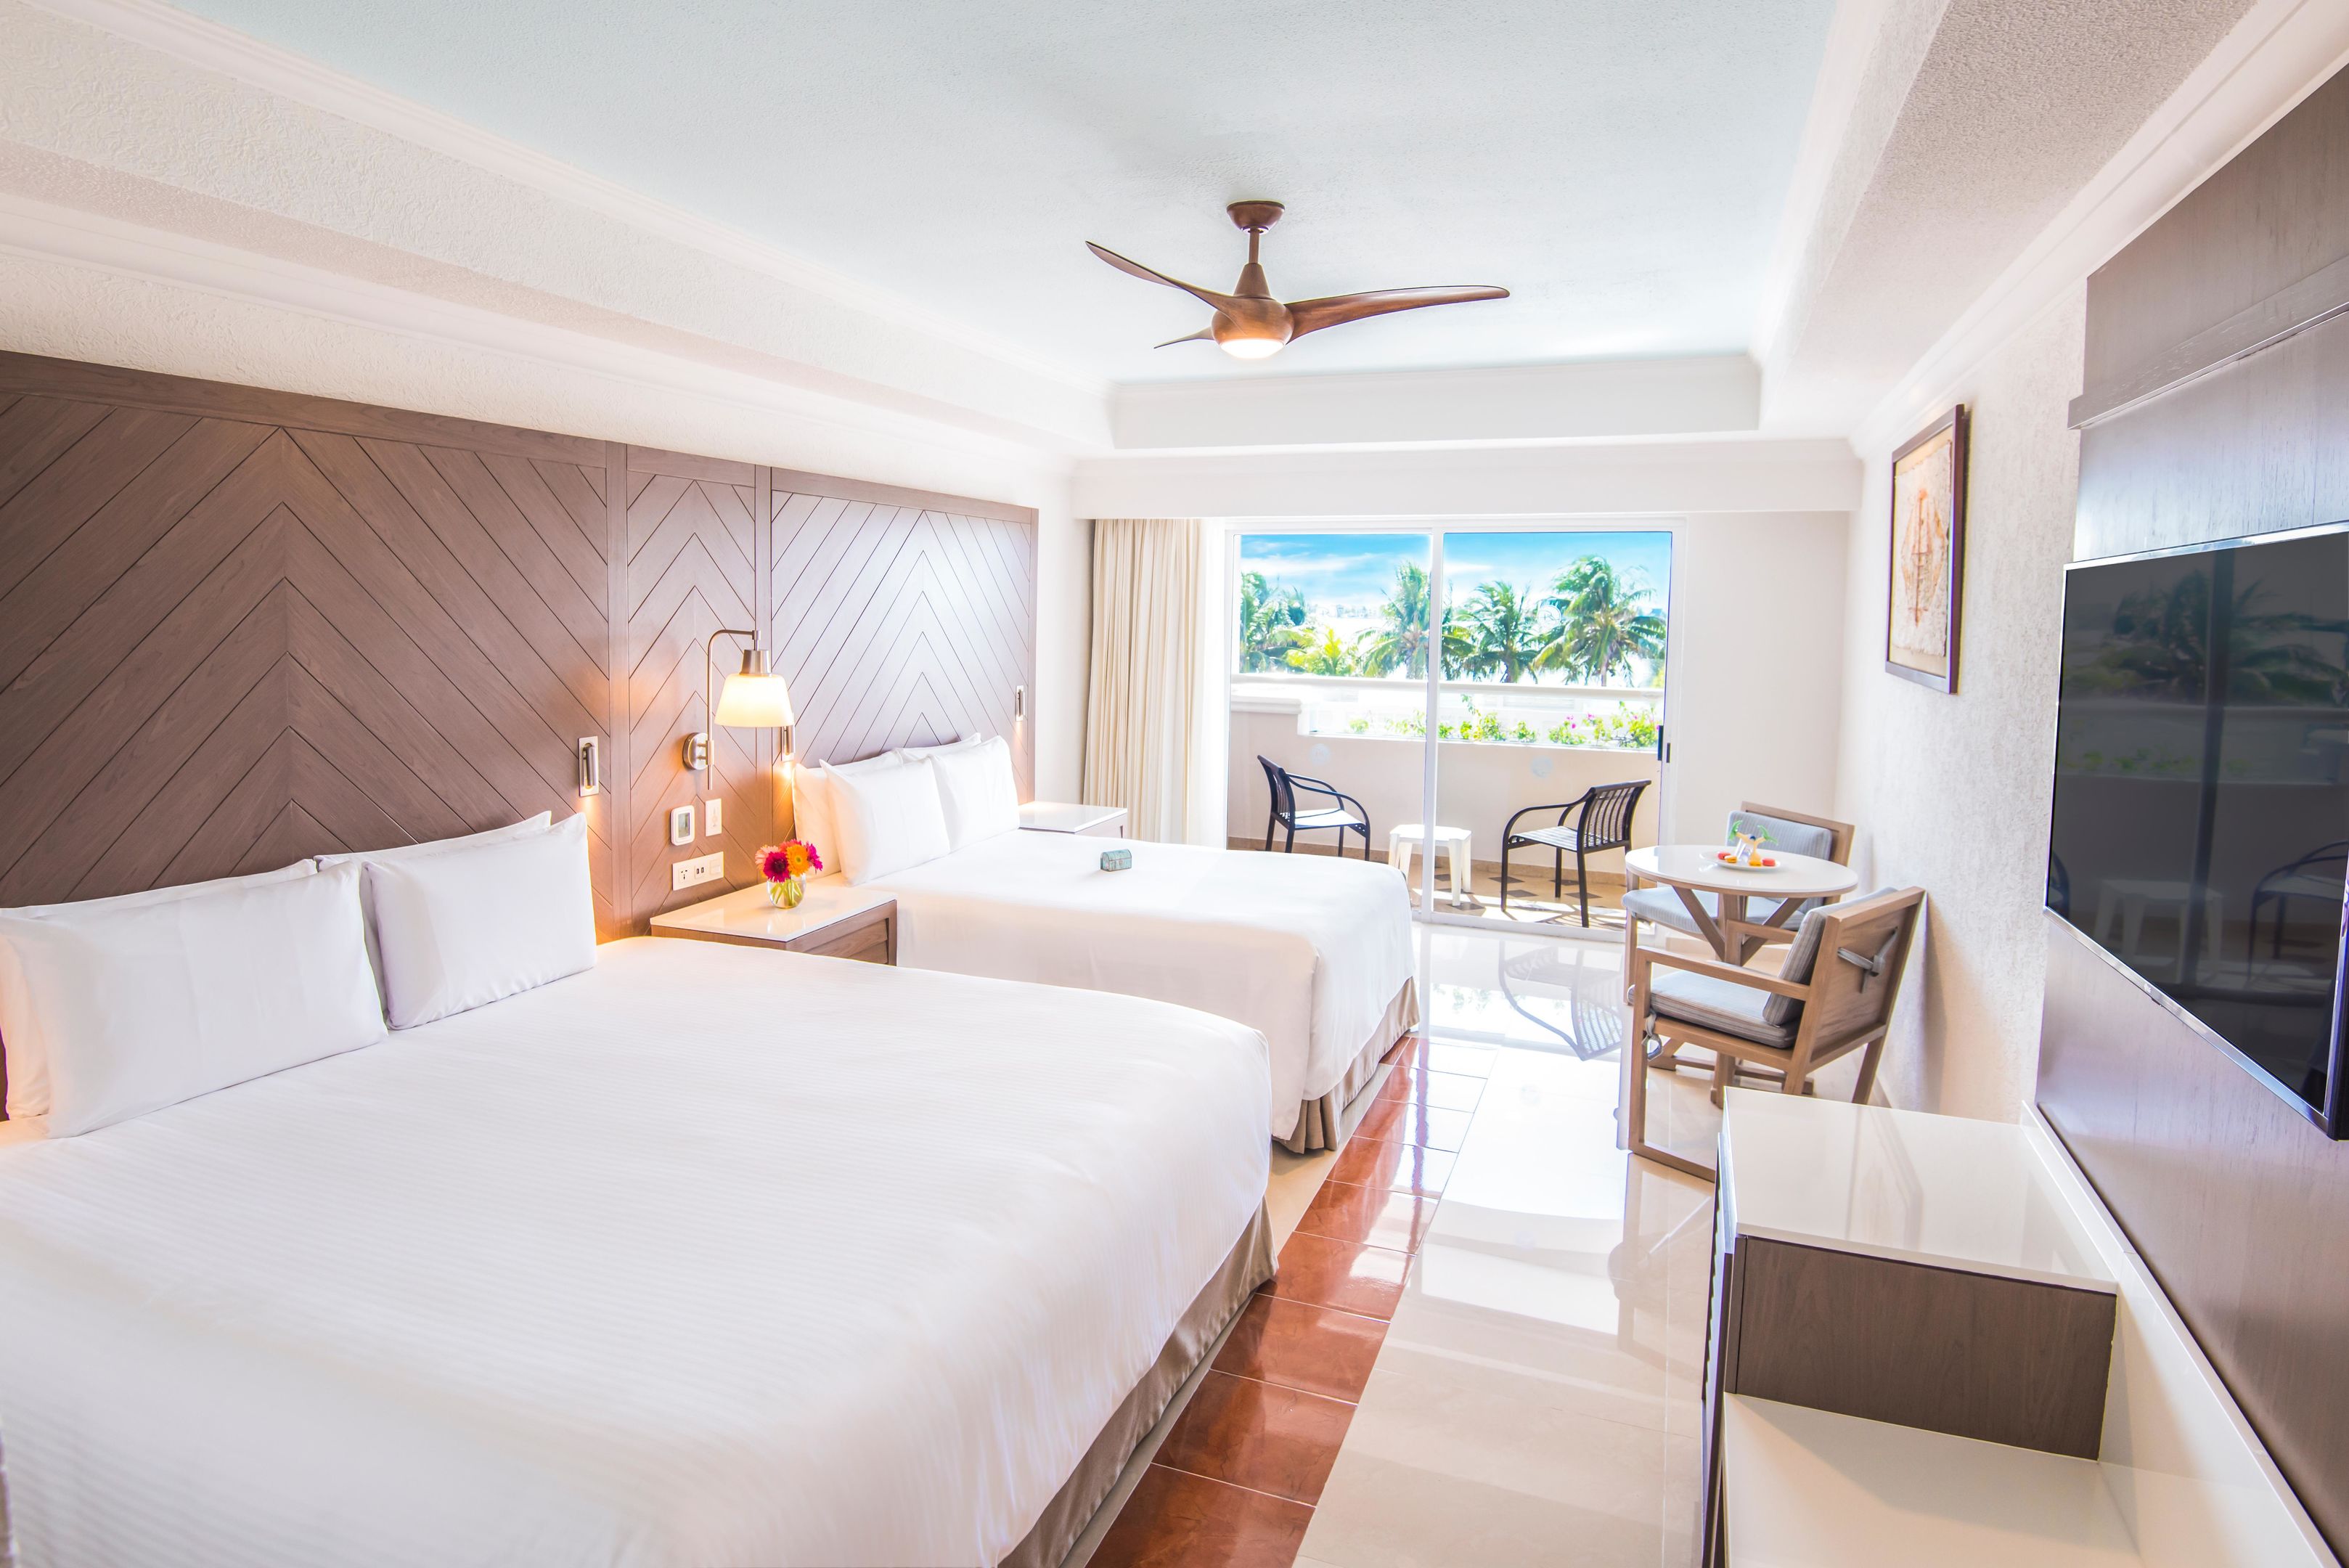 Panama Jack Resorts Cancun